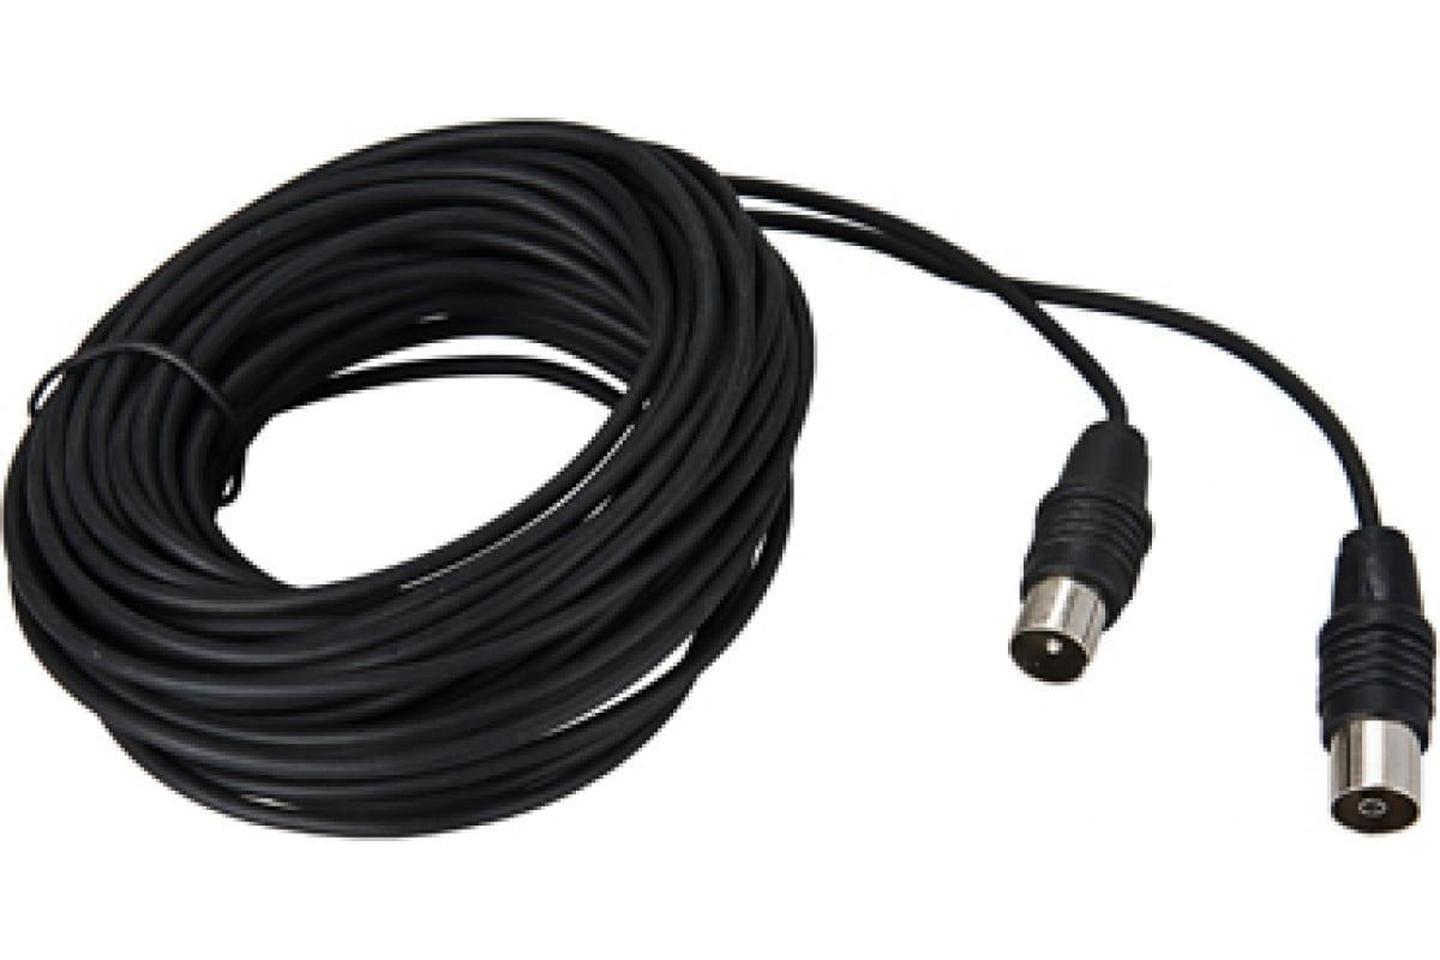 17-5026, ВЧ кабель ТВ штекер - ТВ штекер, длина 10 метров, черный